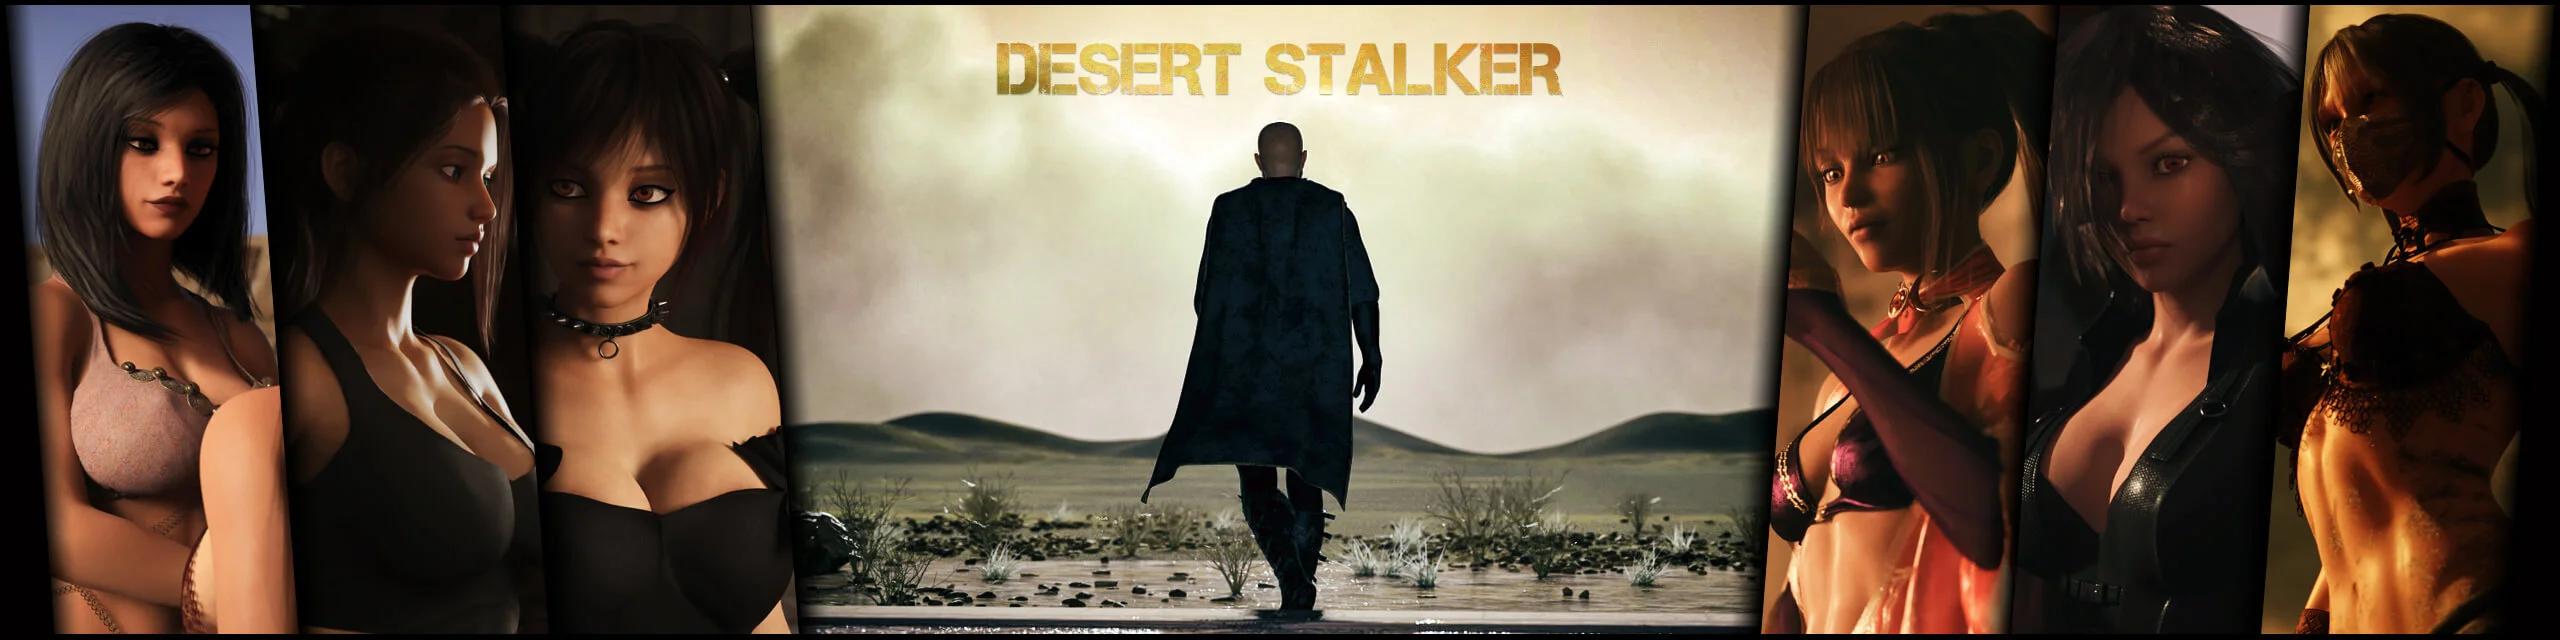 Desert Stalker Game Banner